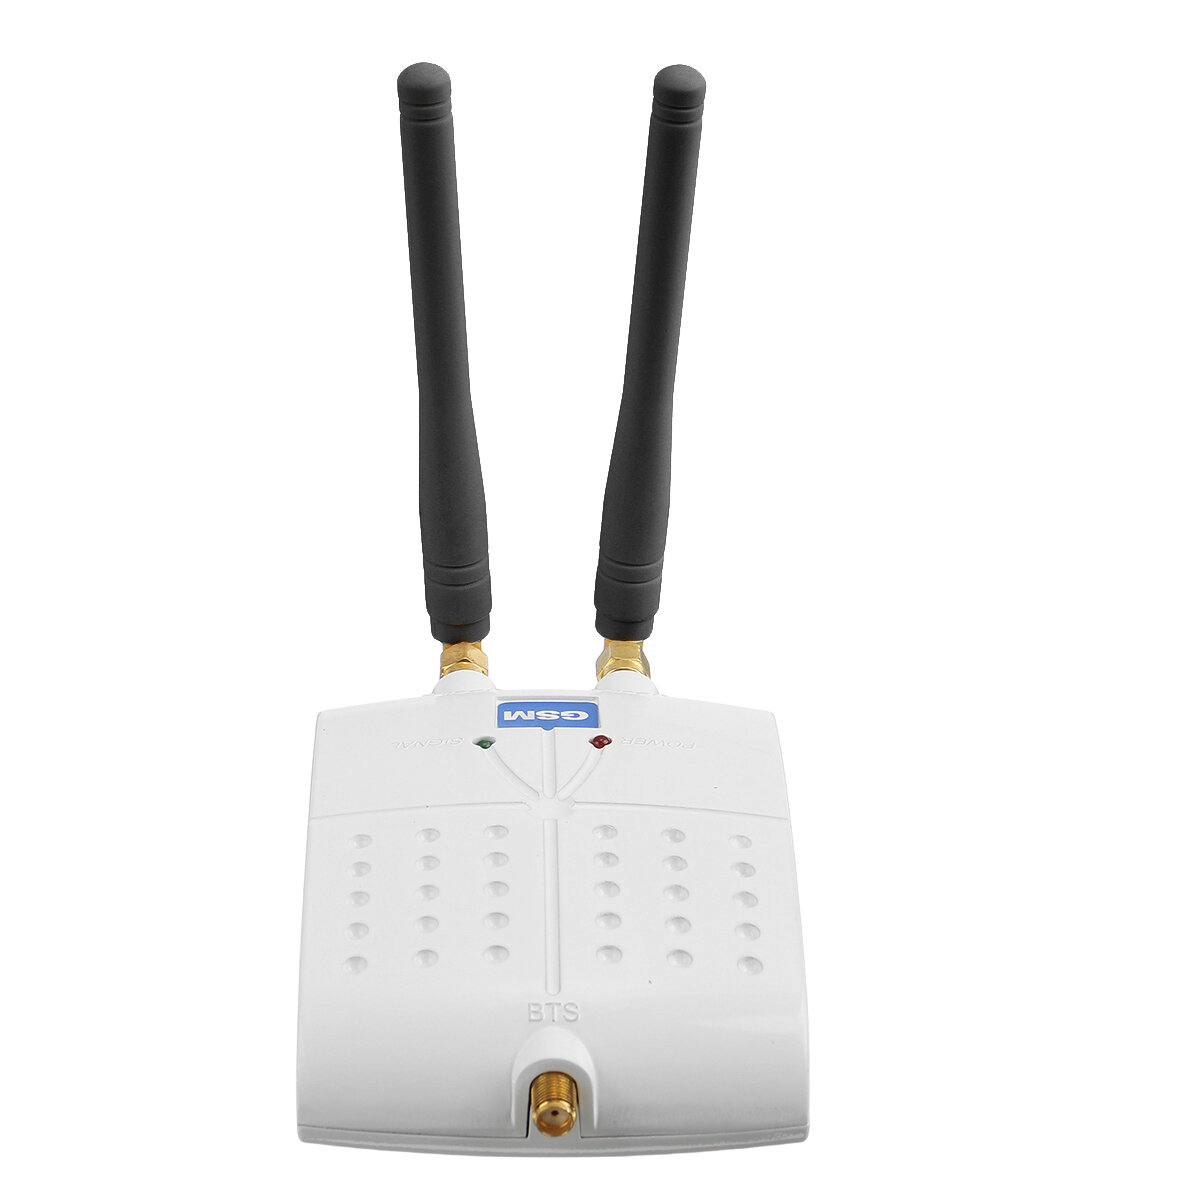 

Сигнал повторителя 1800 МГц 4G LTE Усилитель Повышение качества сигнала Антенна WiFi Booster